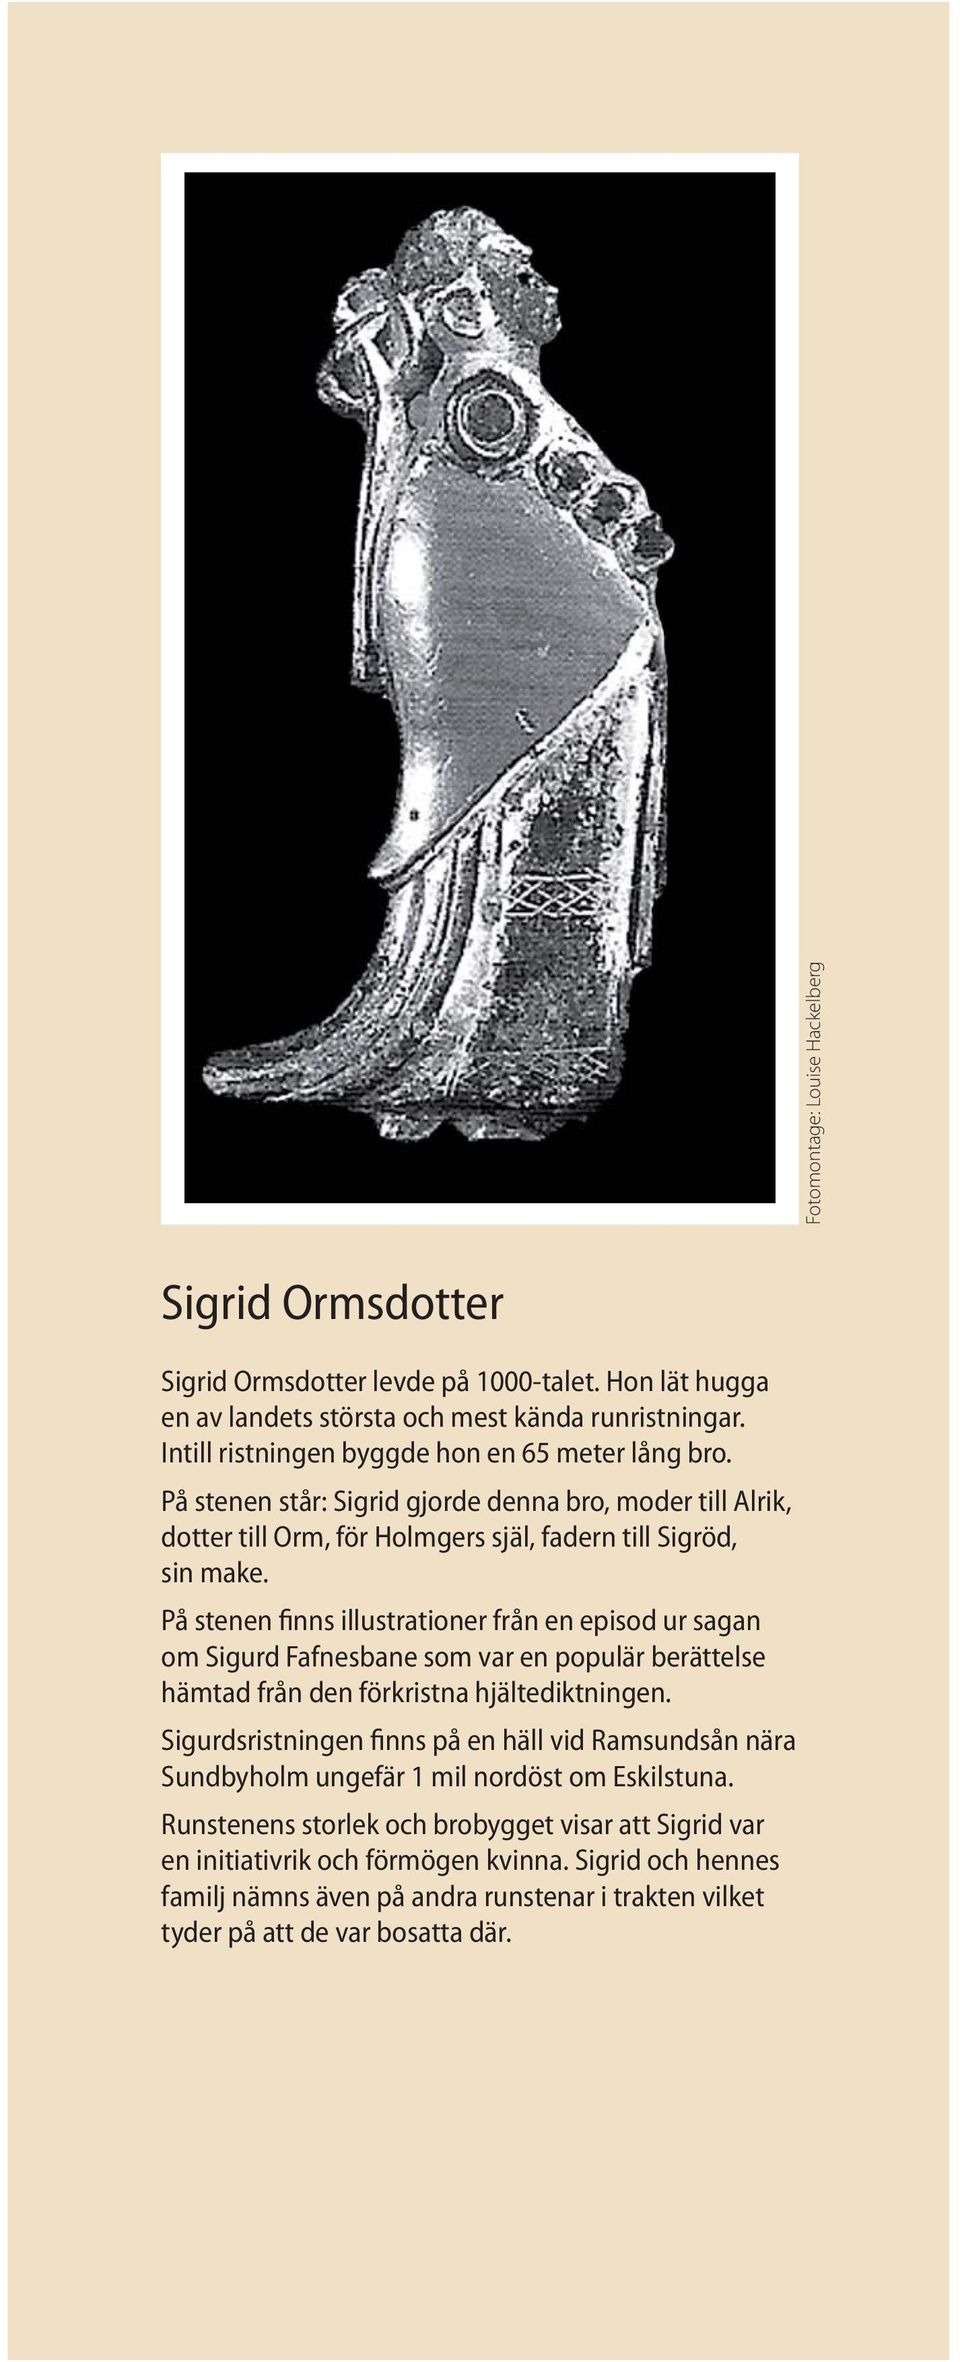 På stenen finns illustrationer från en episod ur sagan om Sigurd Fafnesbane som var en populär berättelse hämtad från den förkristna hjältediktningen.